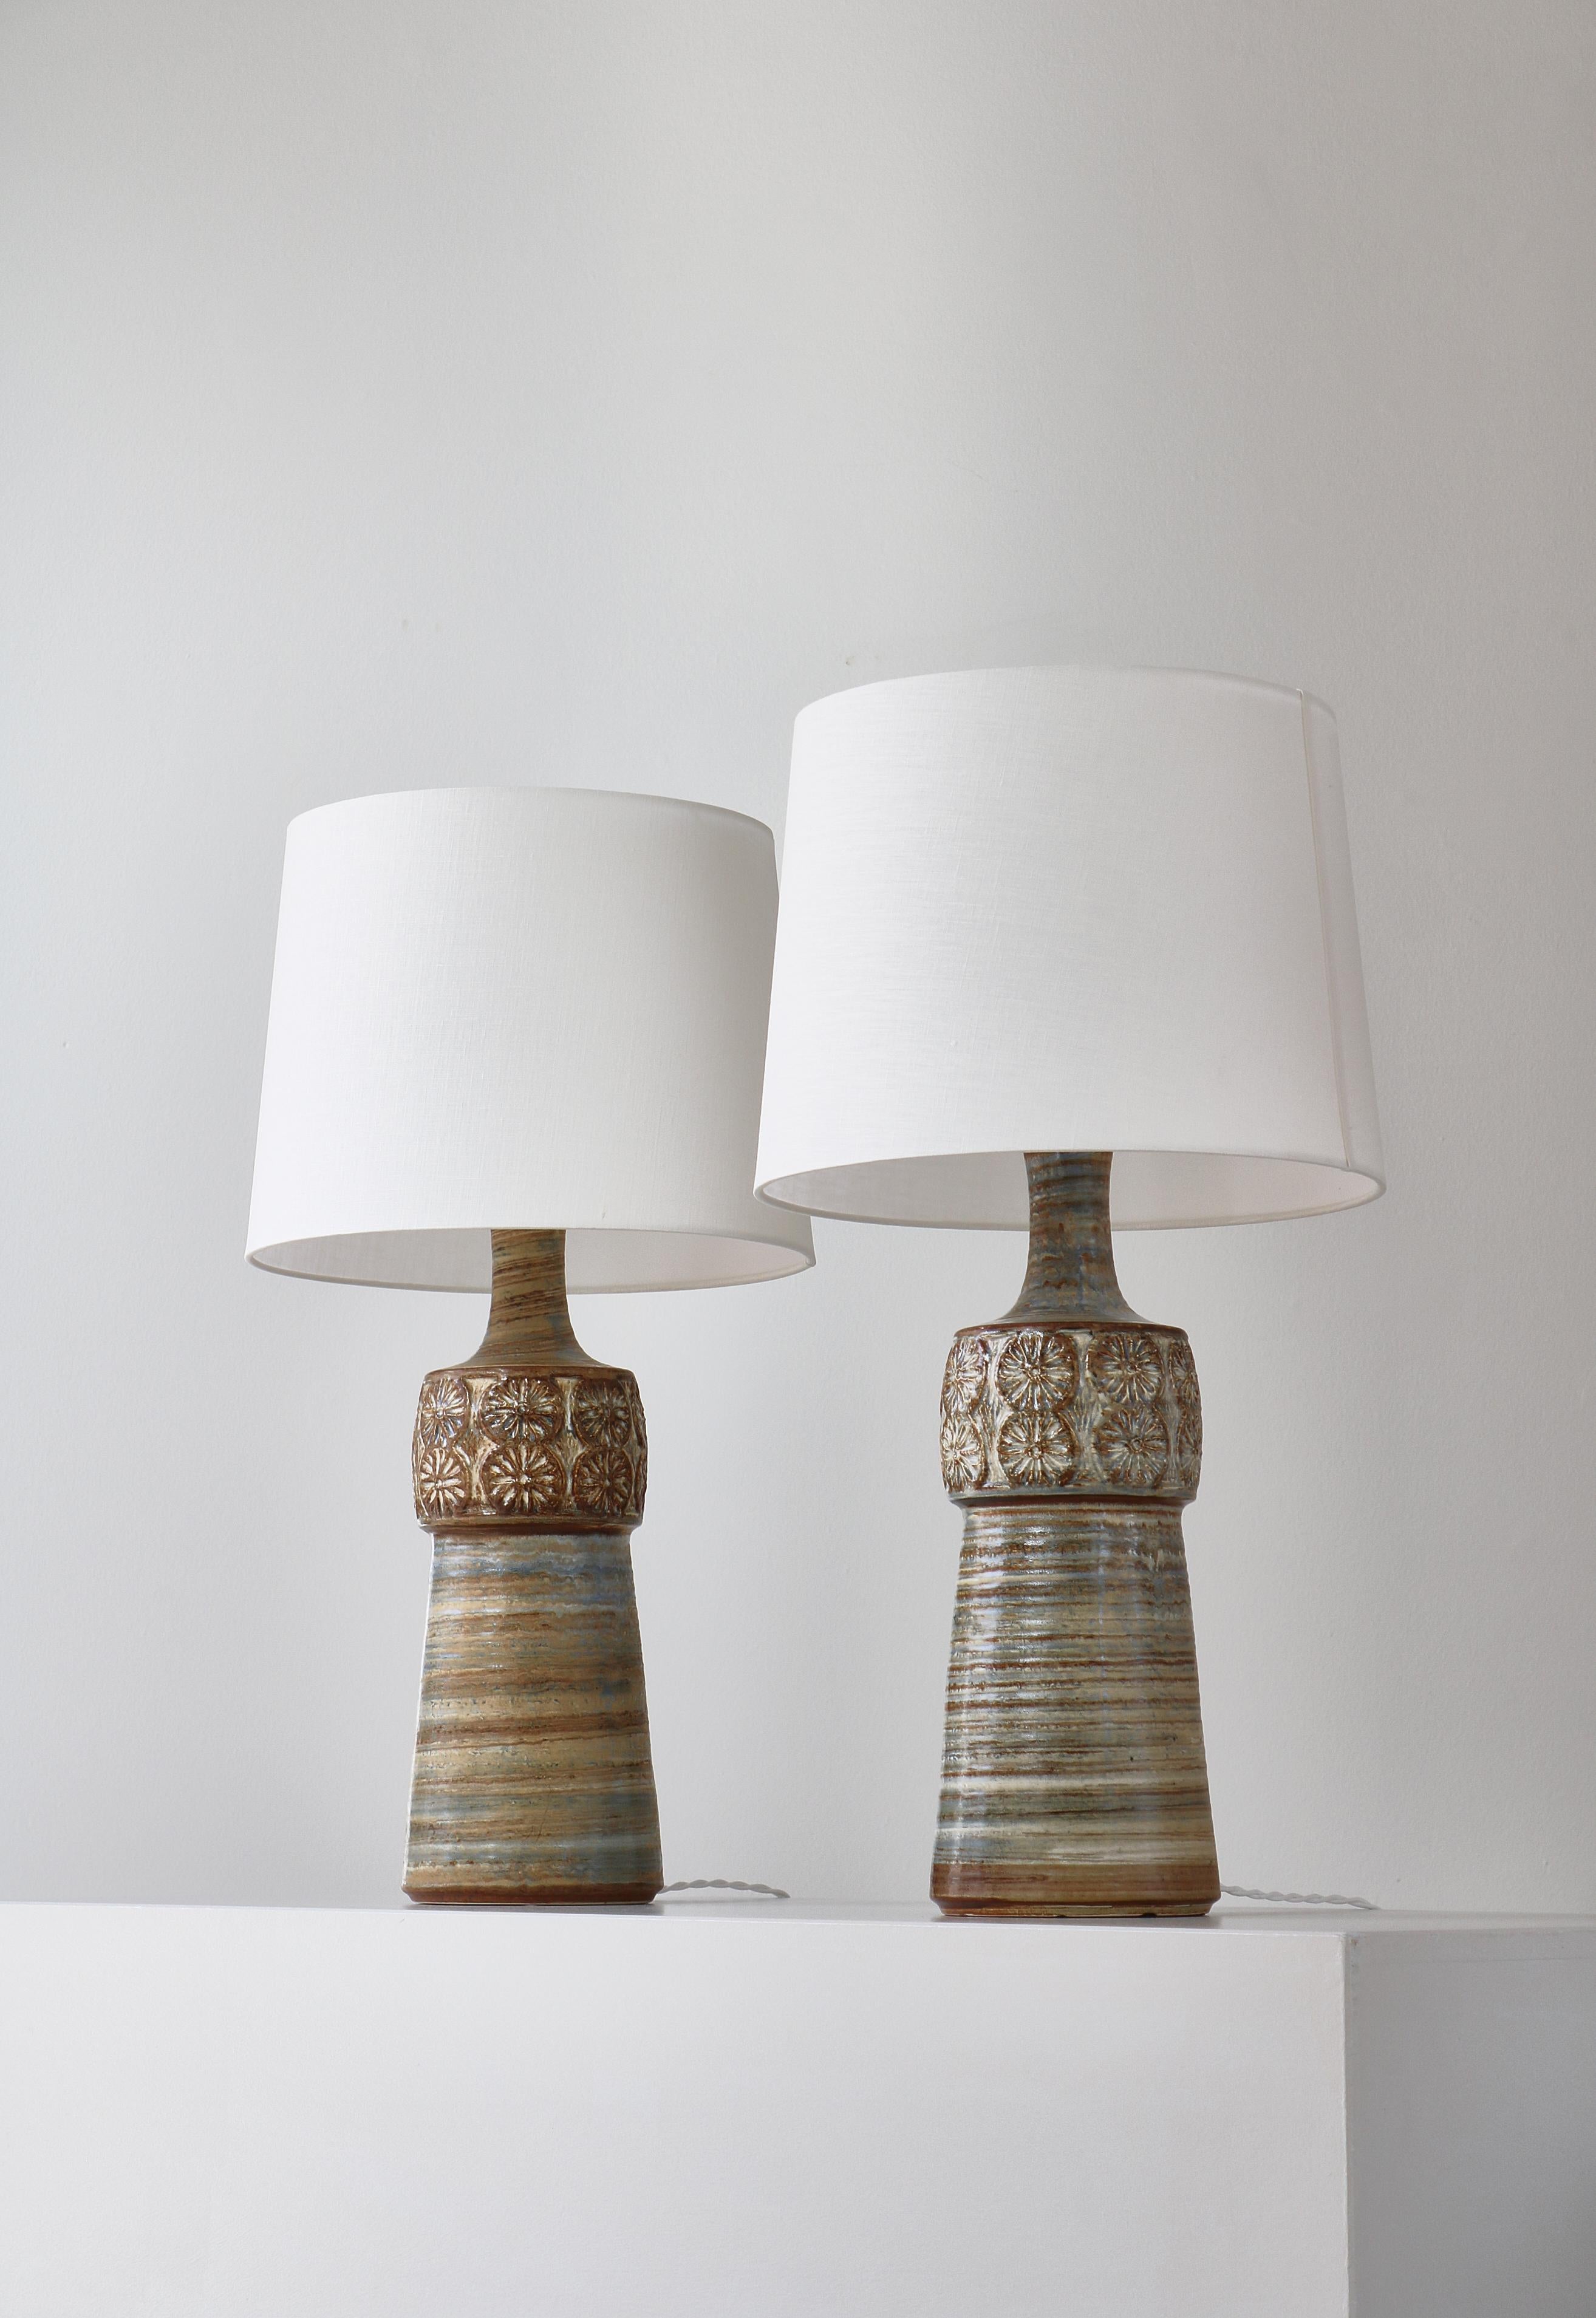 Merveilleuse paire de grandes lampes de table en grès fabriquées à la main au Danemark dans les années 1960 dans l'atelier de grès de Søholm à Bornholm. Equipé de teintes claires en lin.

Søholm Stentøj (grès) est l'un des noms les plus Revere de la